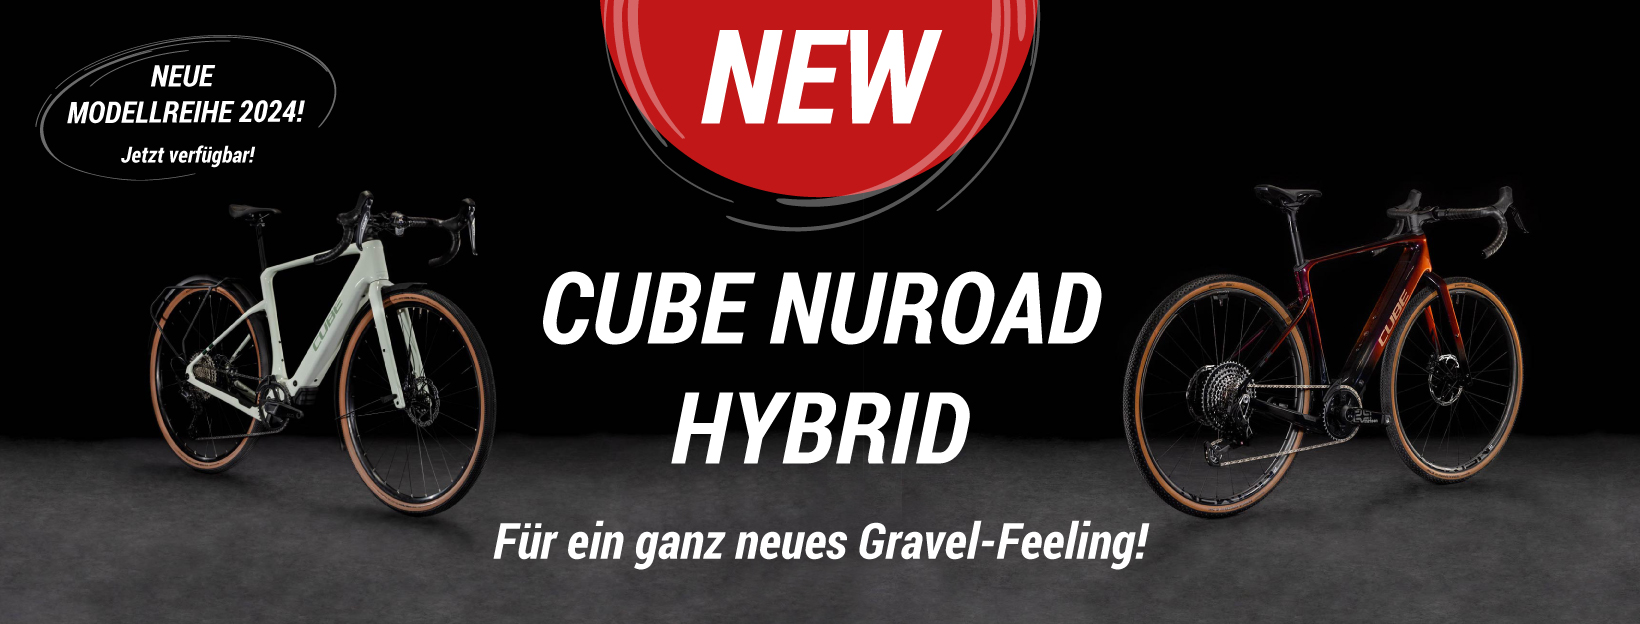 CUBE Nuroad Hybrid im BIKE Market bestellen